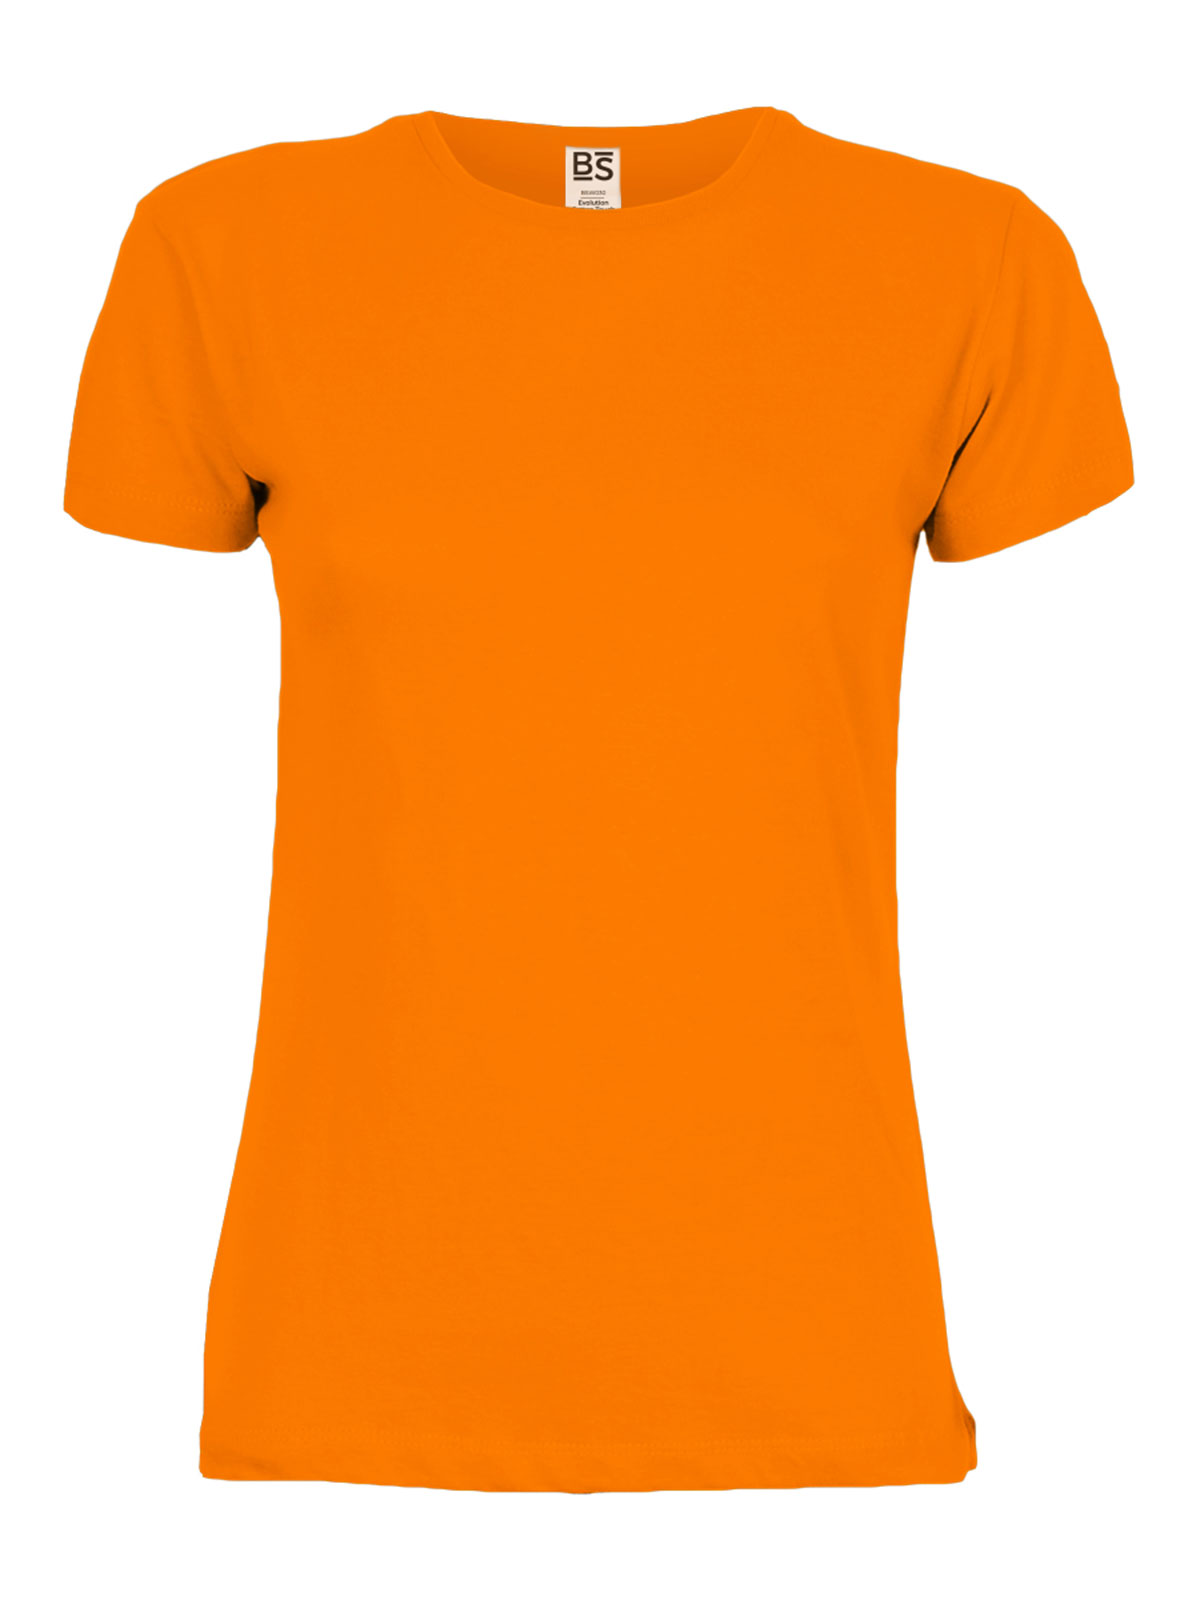 evolution-cotton-touch-women-orange-fluo.webp